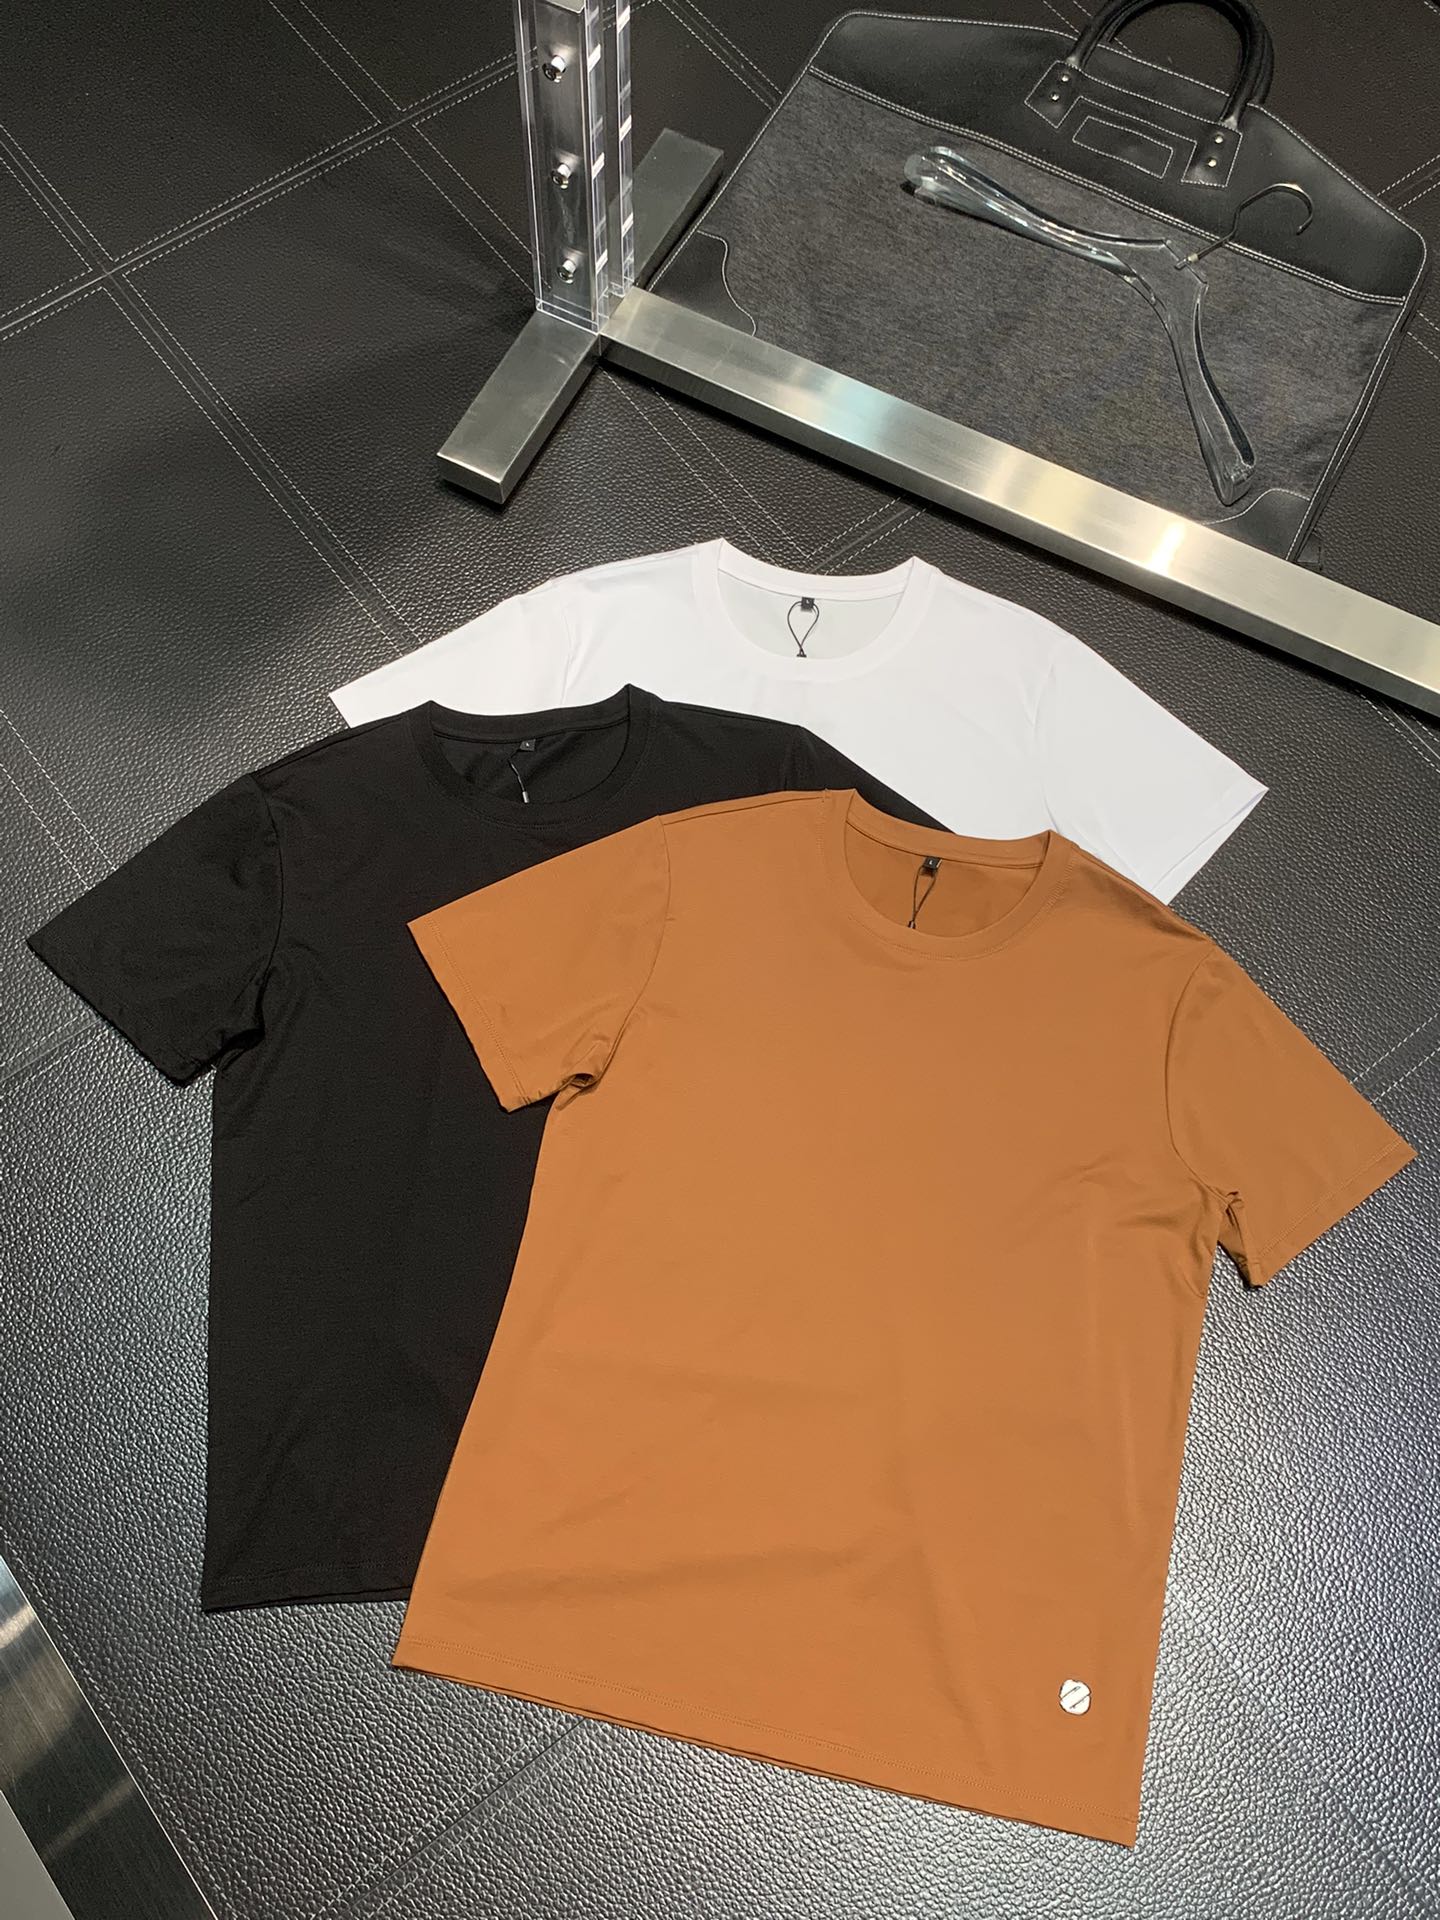 Zegna Clothing T-Shirt Men Fashion Short Sleeve